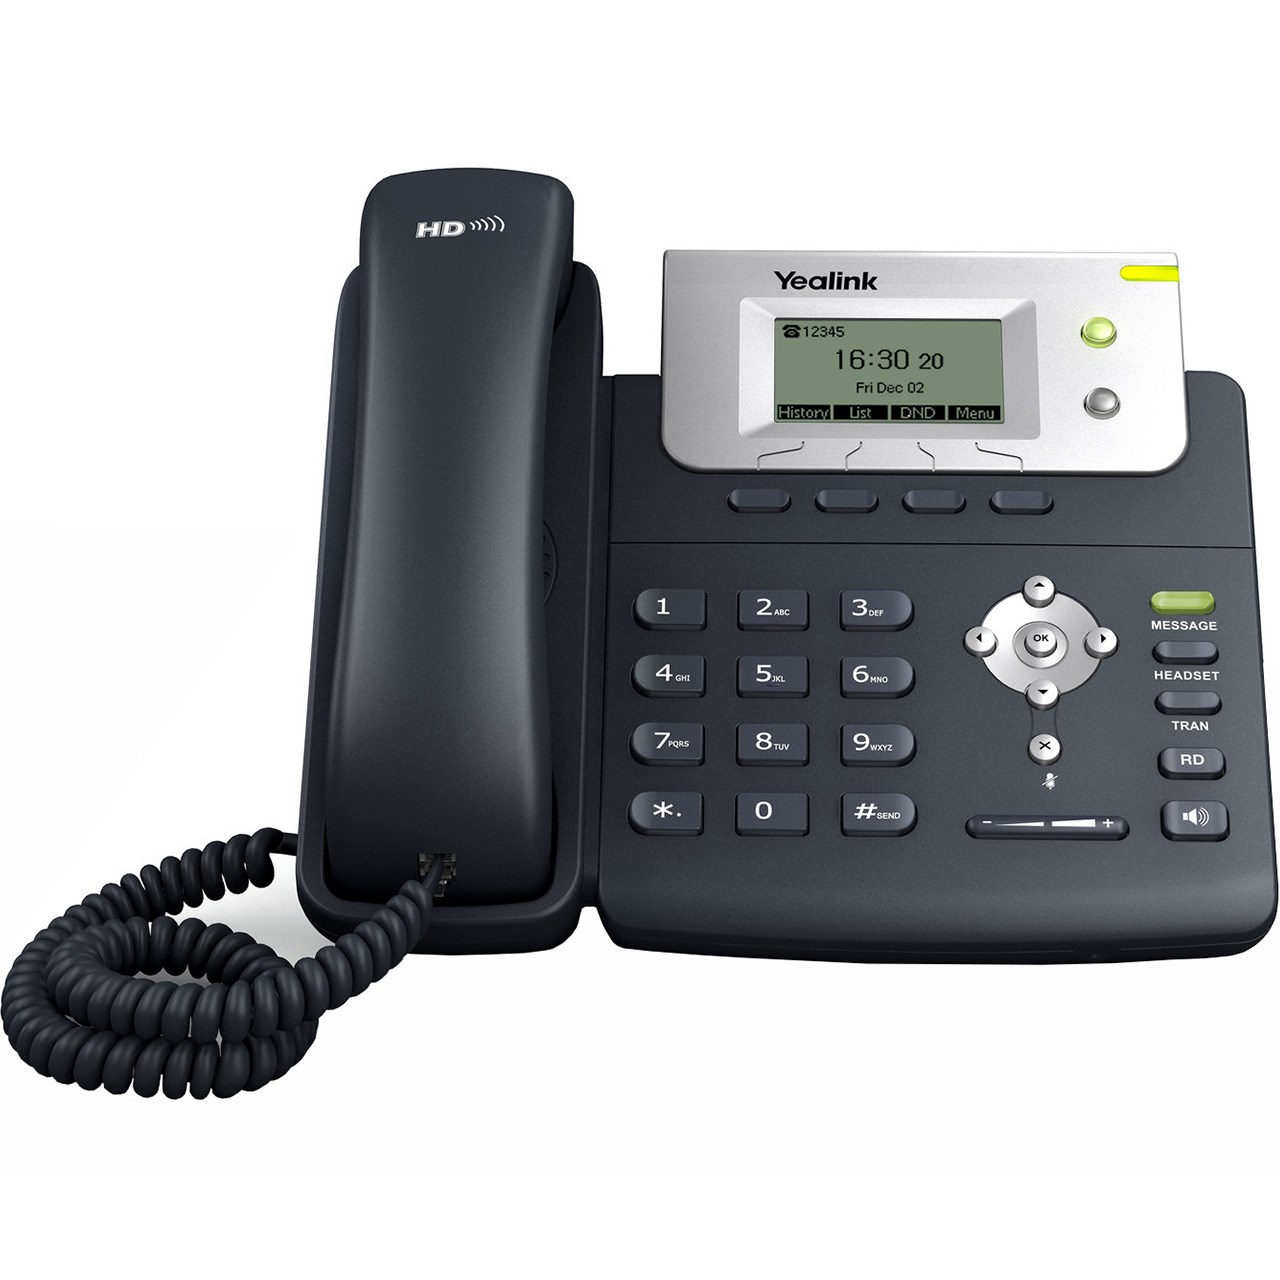 نکته خرید - قیمت روز تلفن تحت شبکه یالینک مدل SIP T21 E2 خرید